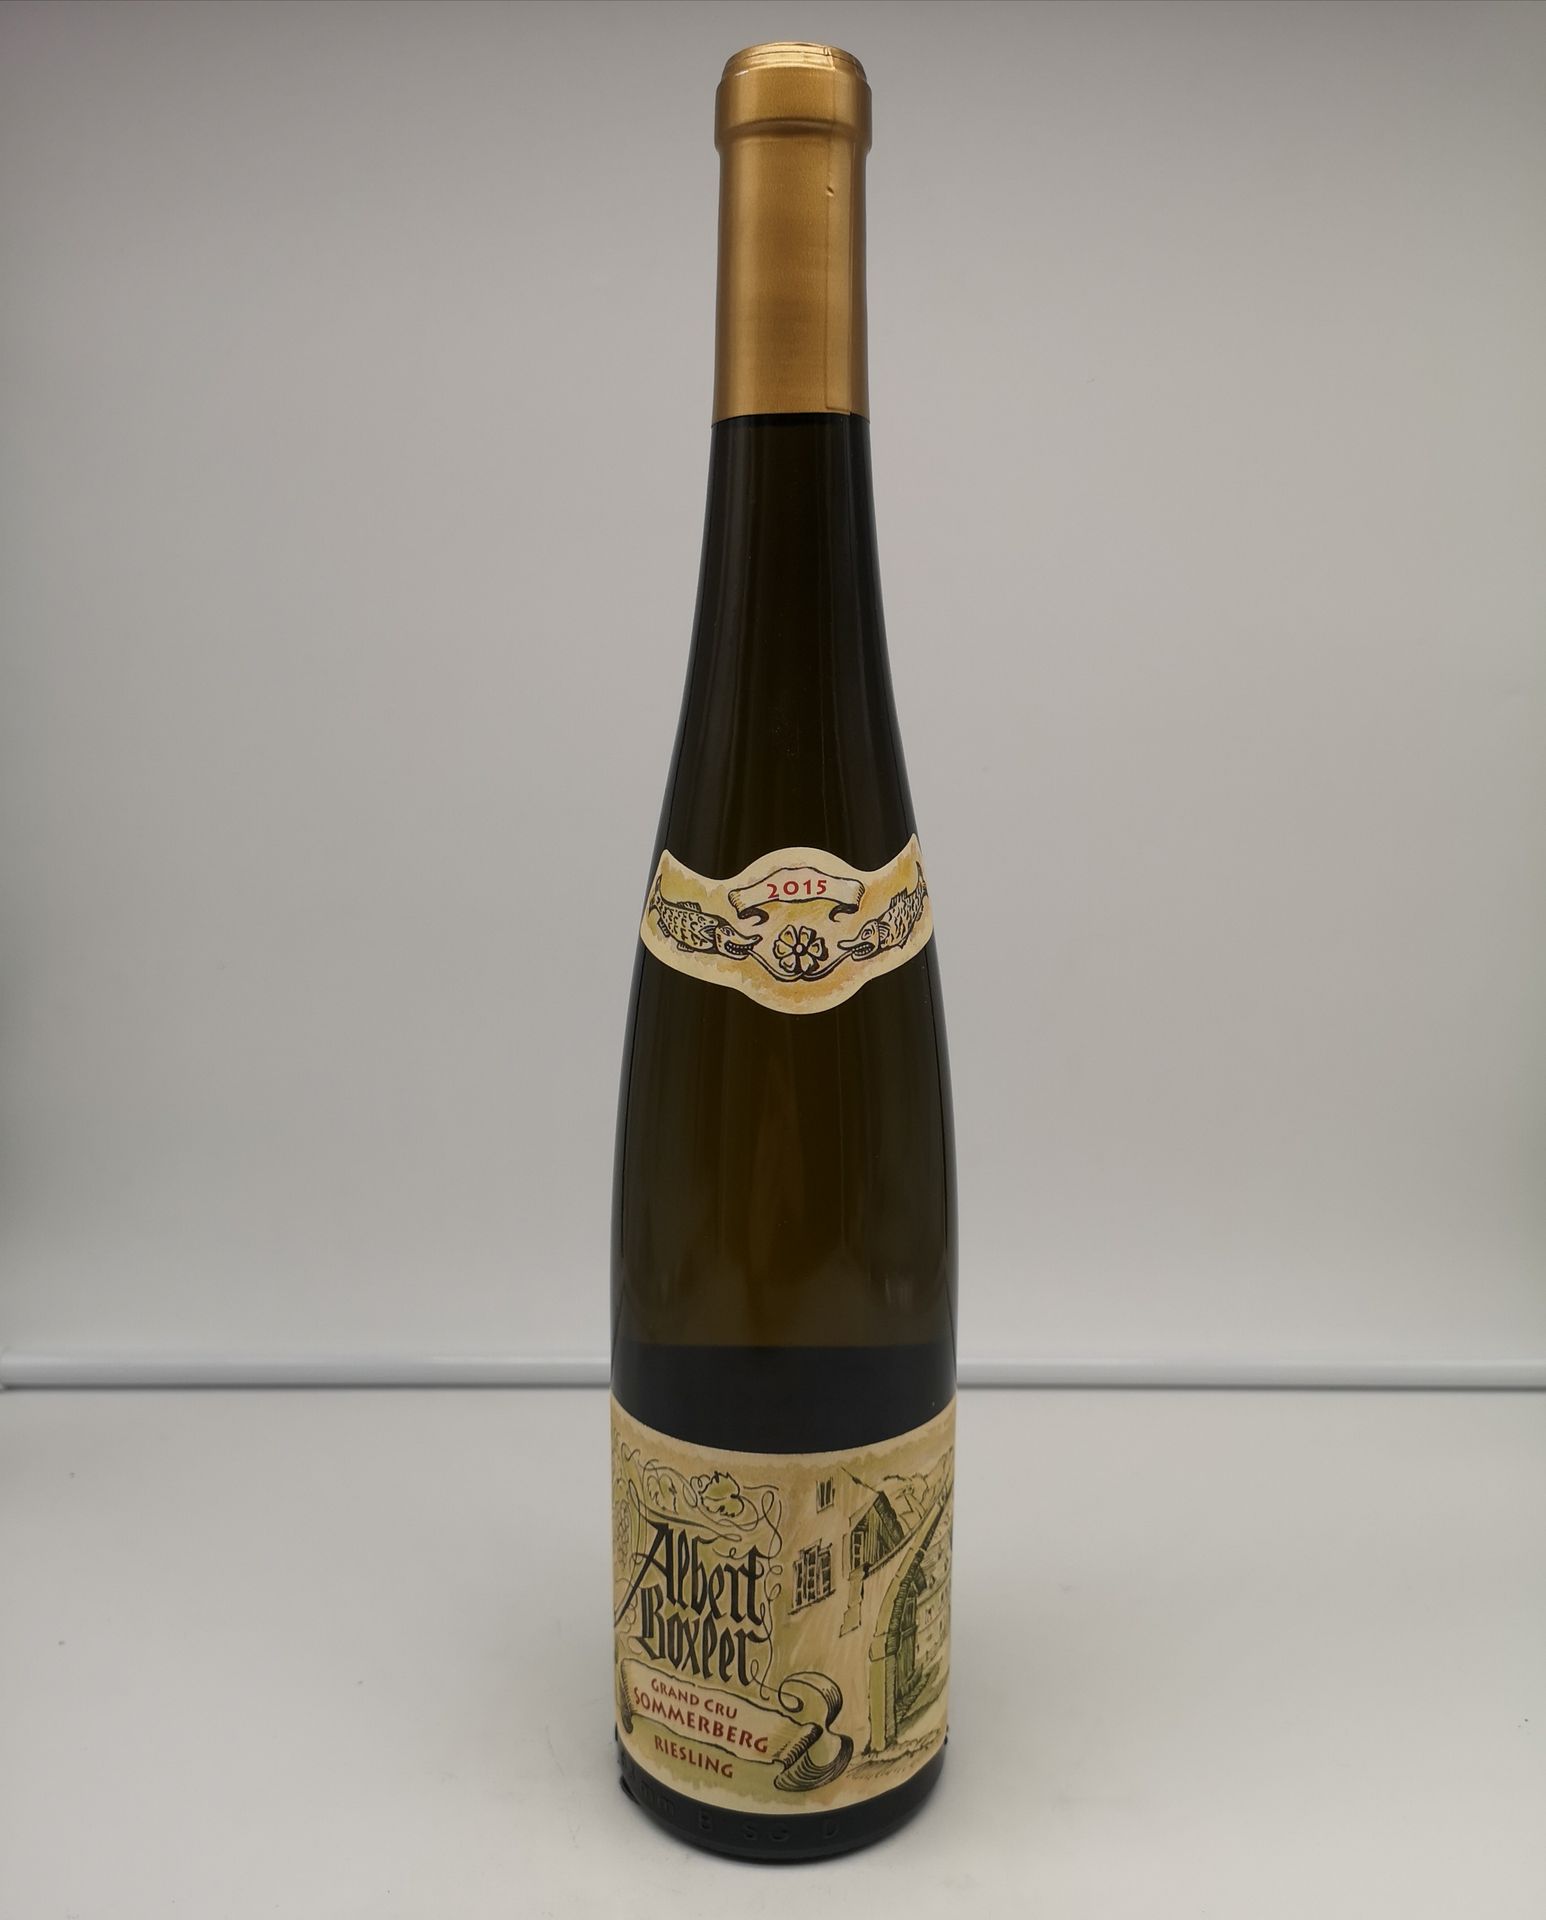 Null 12瓶阿尔伯特-博克斯勒雷司令特级品索默伯格 "JV酒 "2015阿尔萨斯